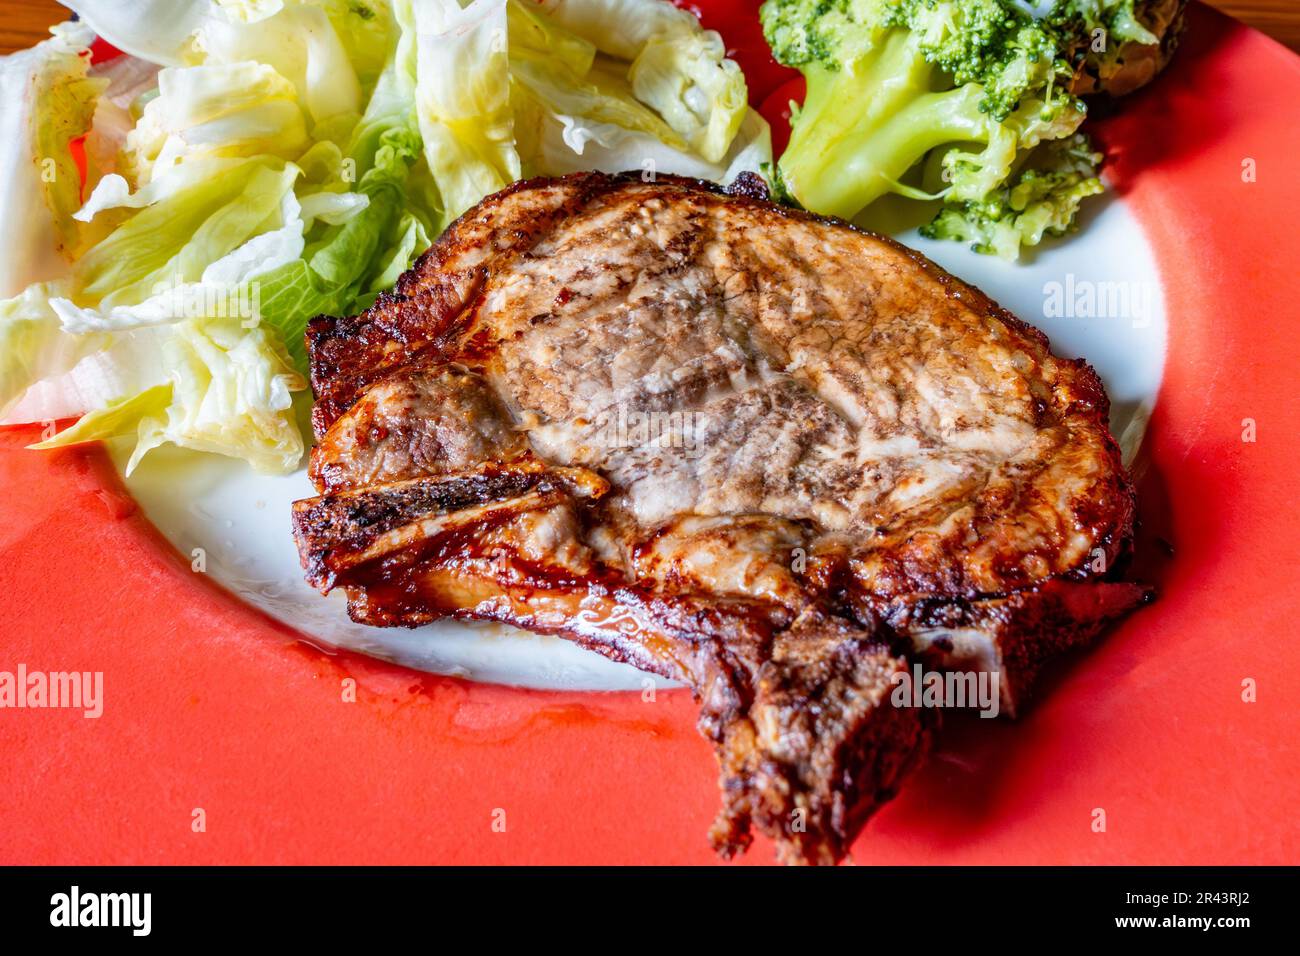 Una chuleta de cerdo frita al aire servida con brócoli al vapor y ensalada en una comida baja en carbohidratos Foto de stock